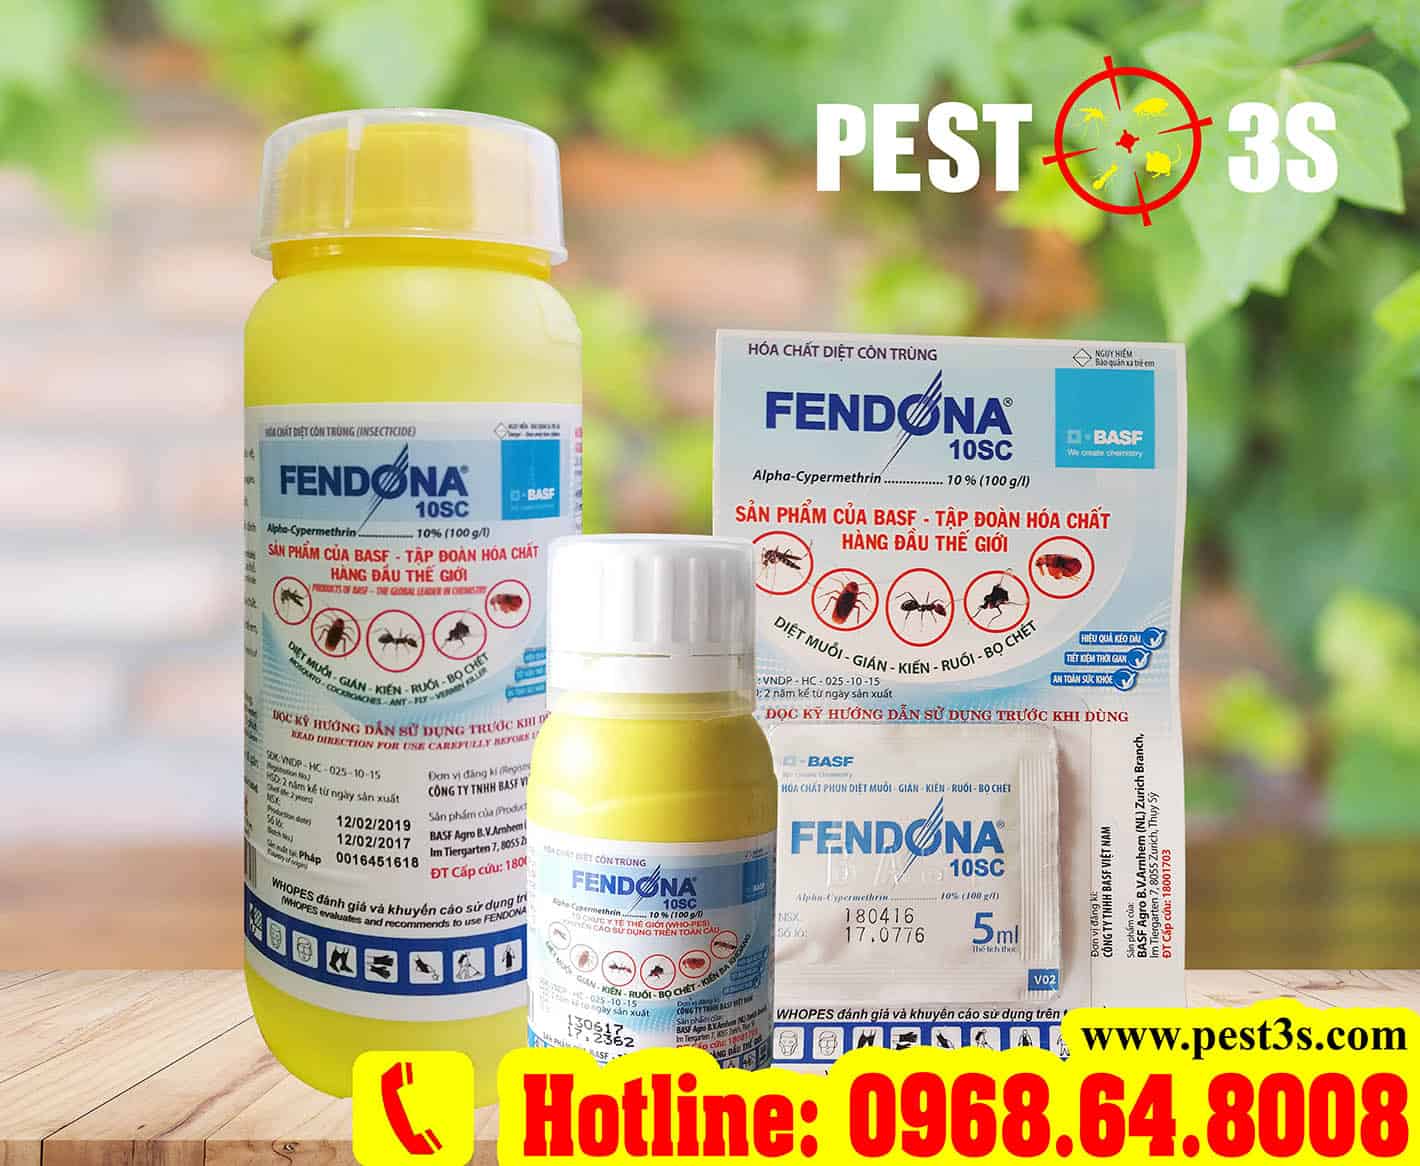 Thuốc diệt muỗi Fendona 10SC chính hãng tại Pest3s.com